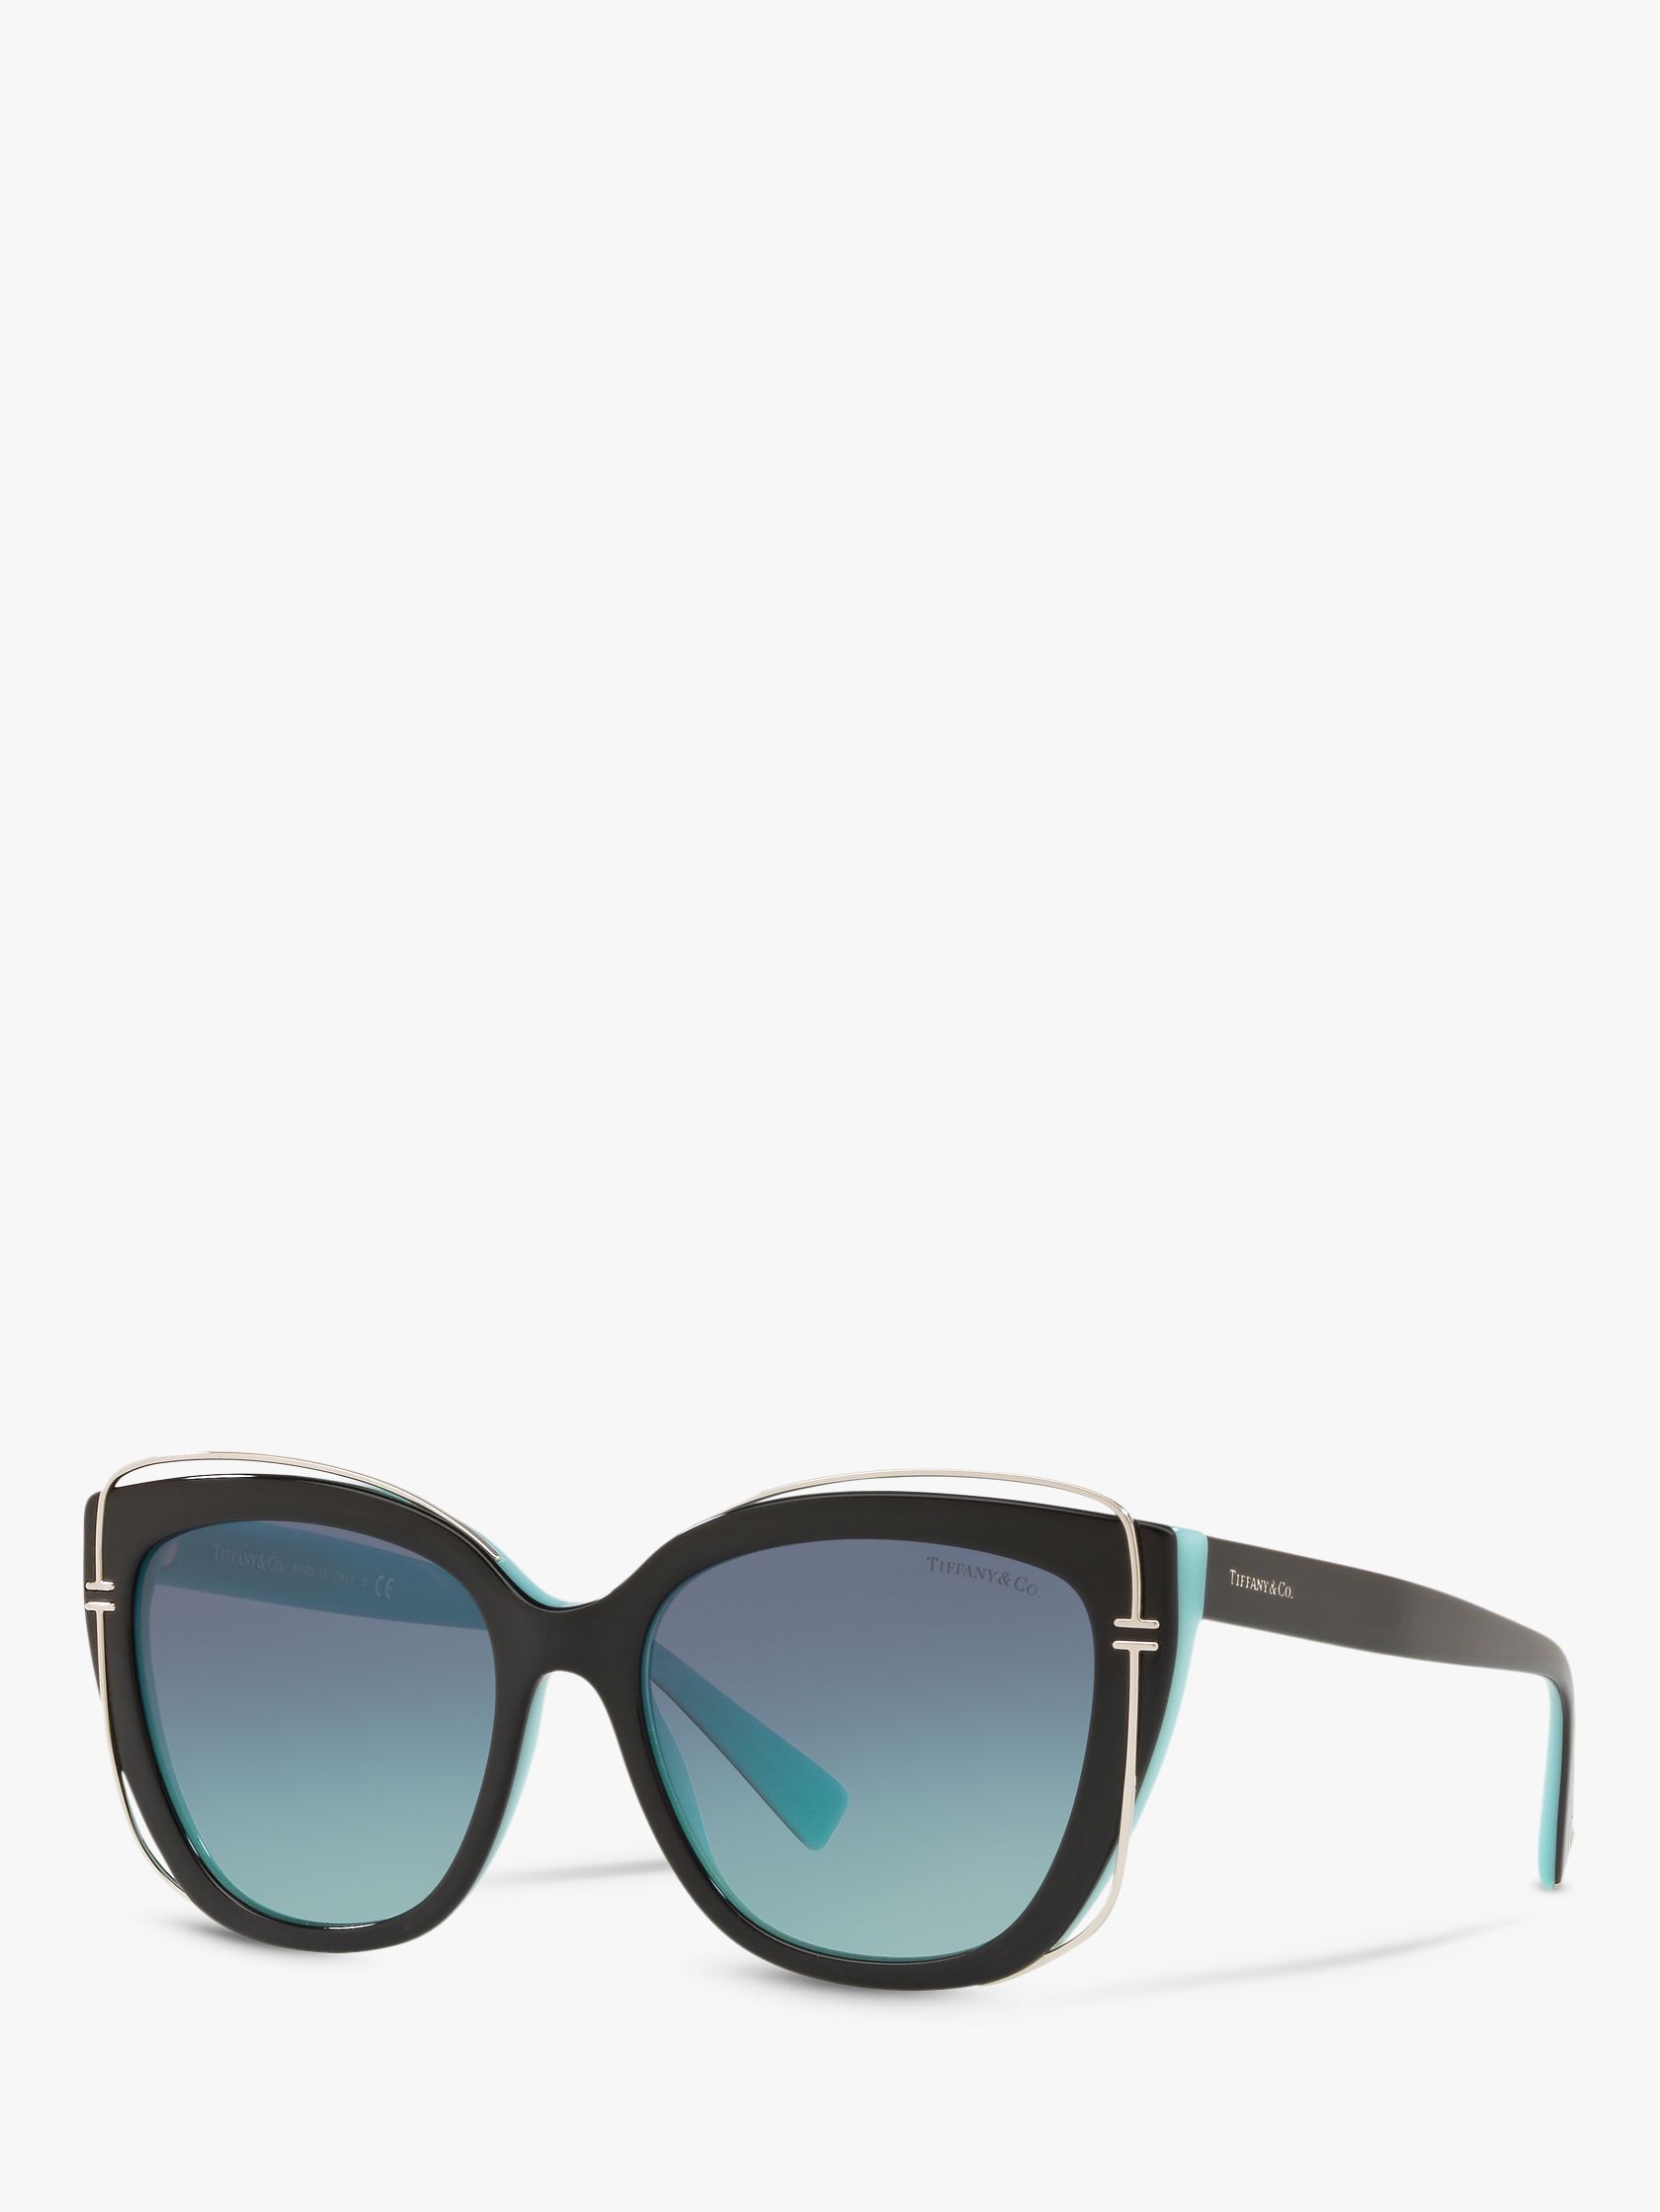 where to buy tiffany sunglasses